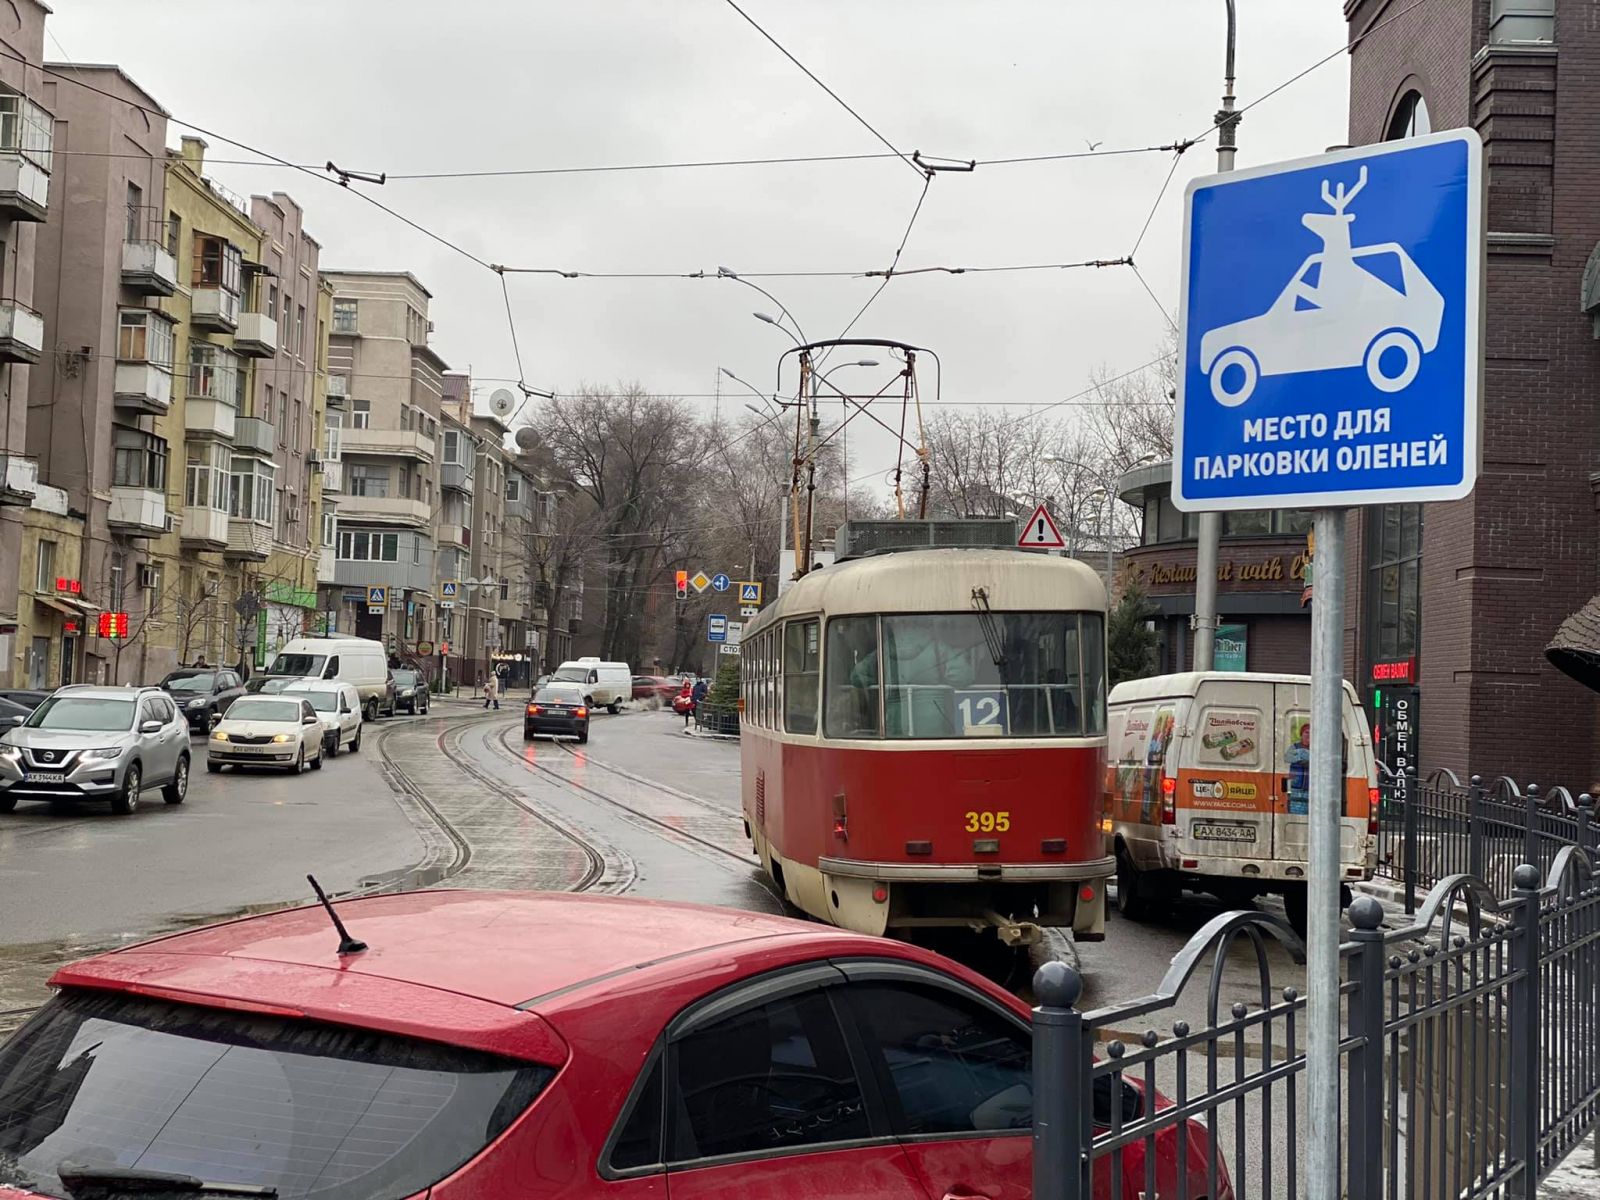 В Харькове появился знак для парковки оленей (фото)